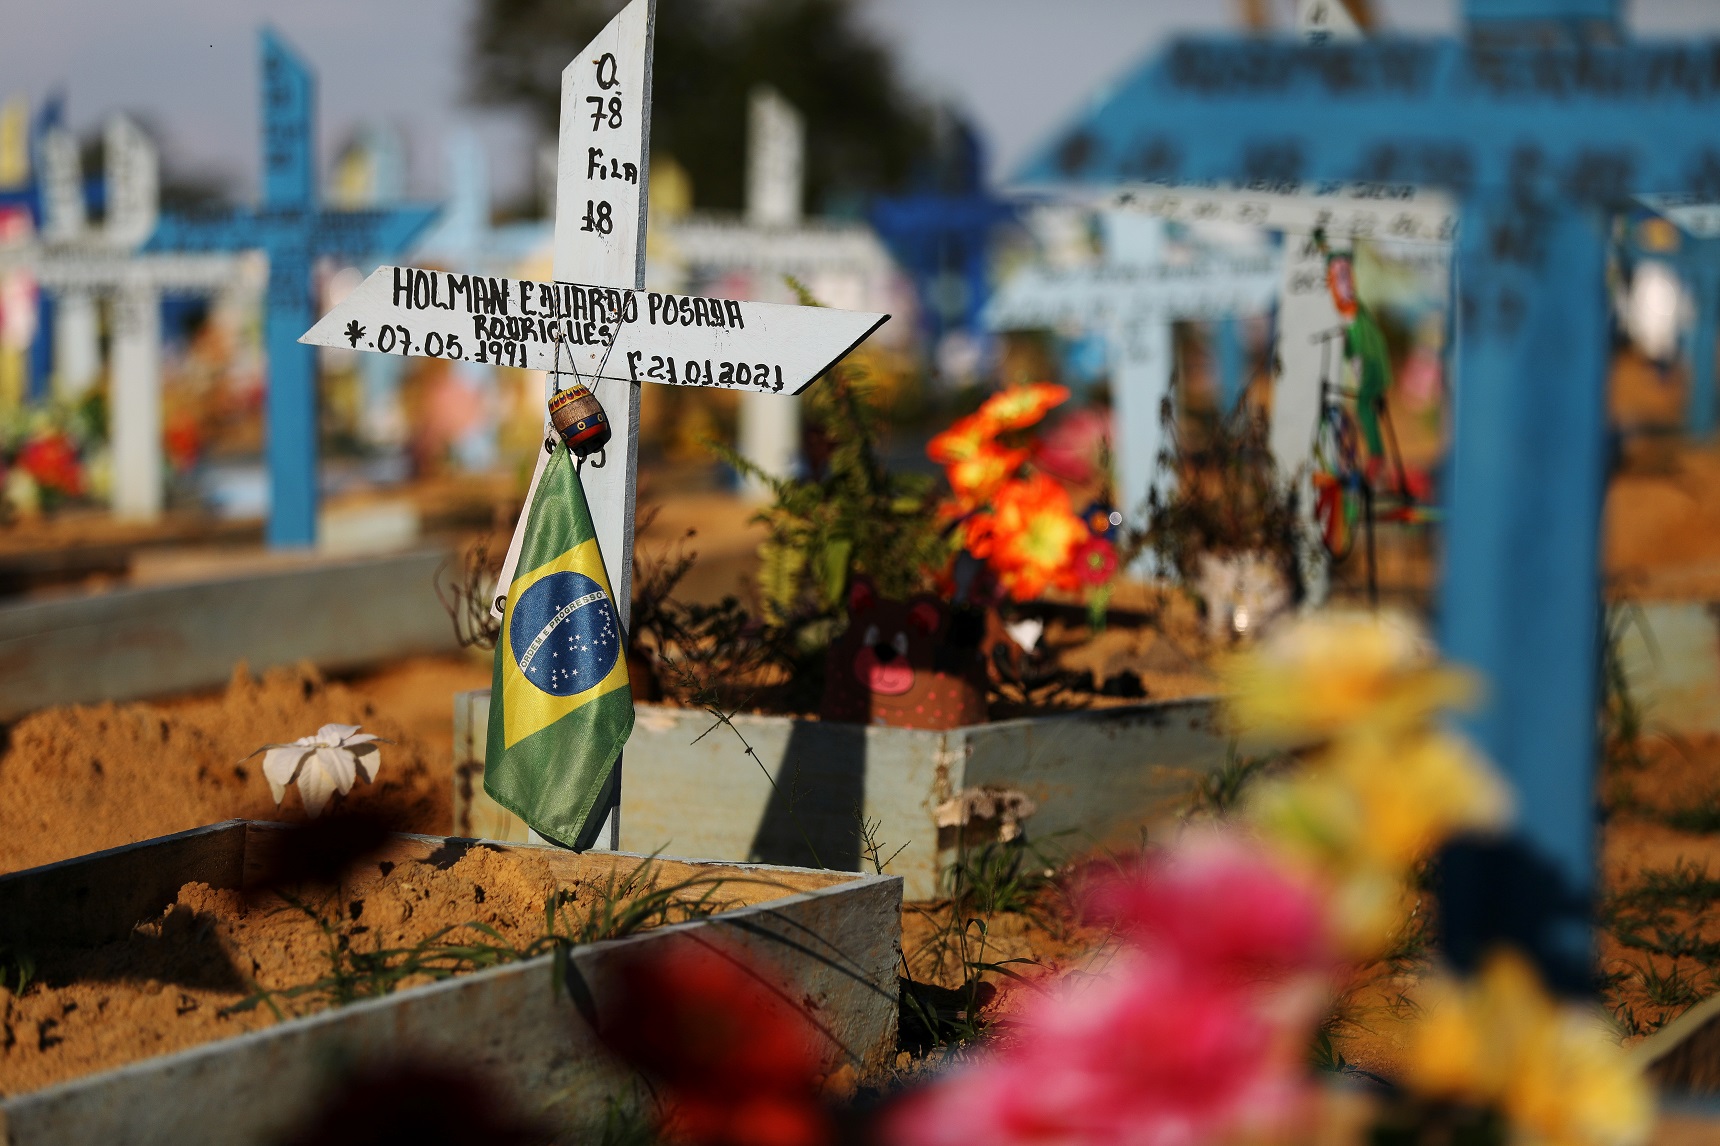 علم برازيلي على قبر شخص مات بسبب فيروس كورونا في مقبرة باركي تاروما في ماناوس، البرازيل، 20 أيار/مايو 2021. (رويترز / برونو كيلي)